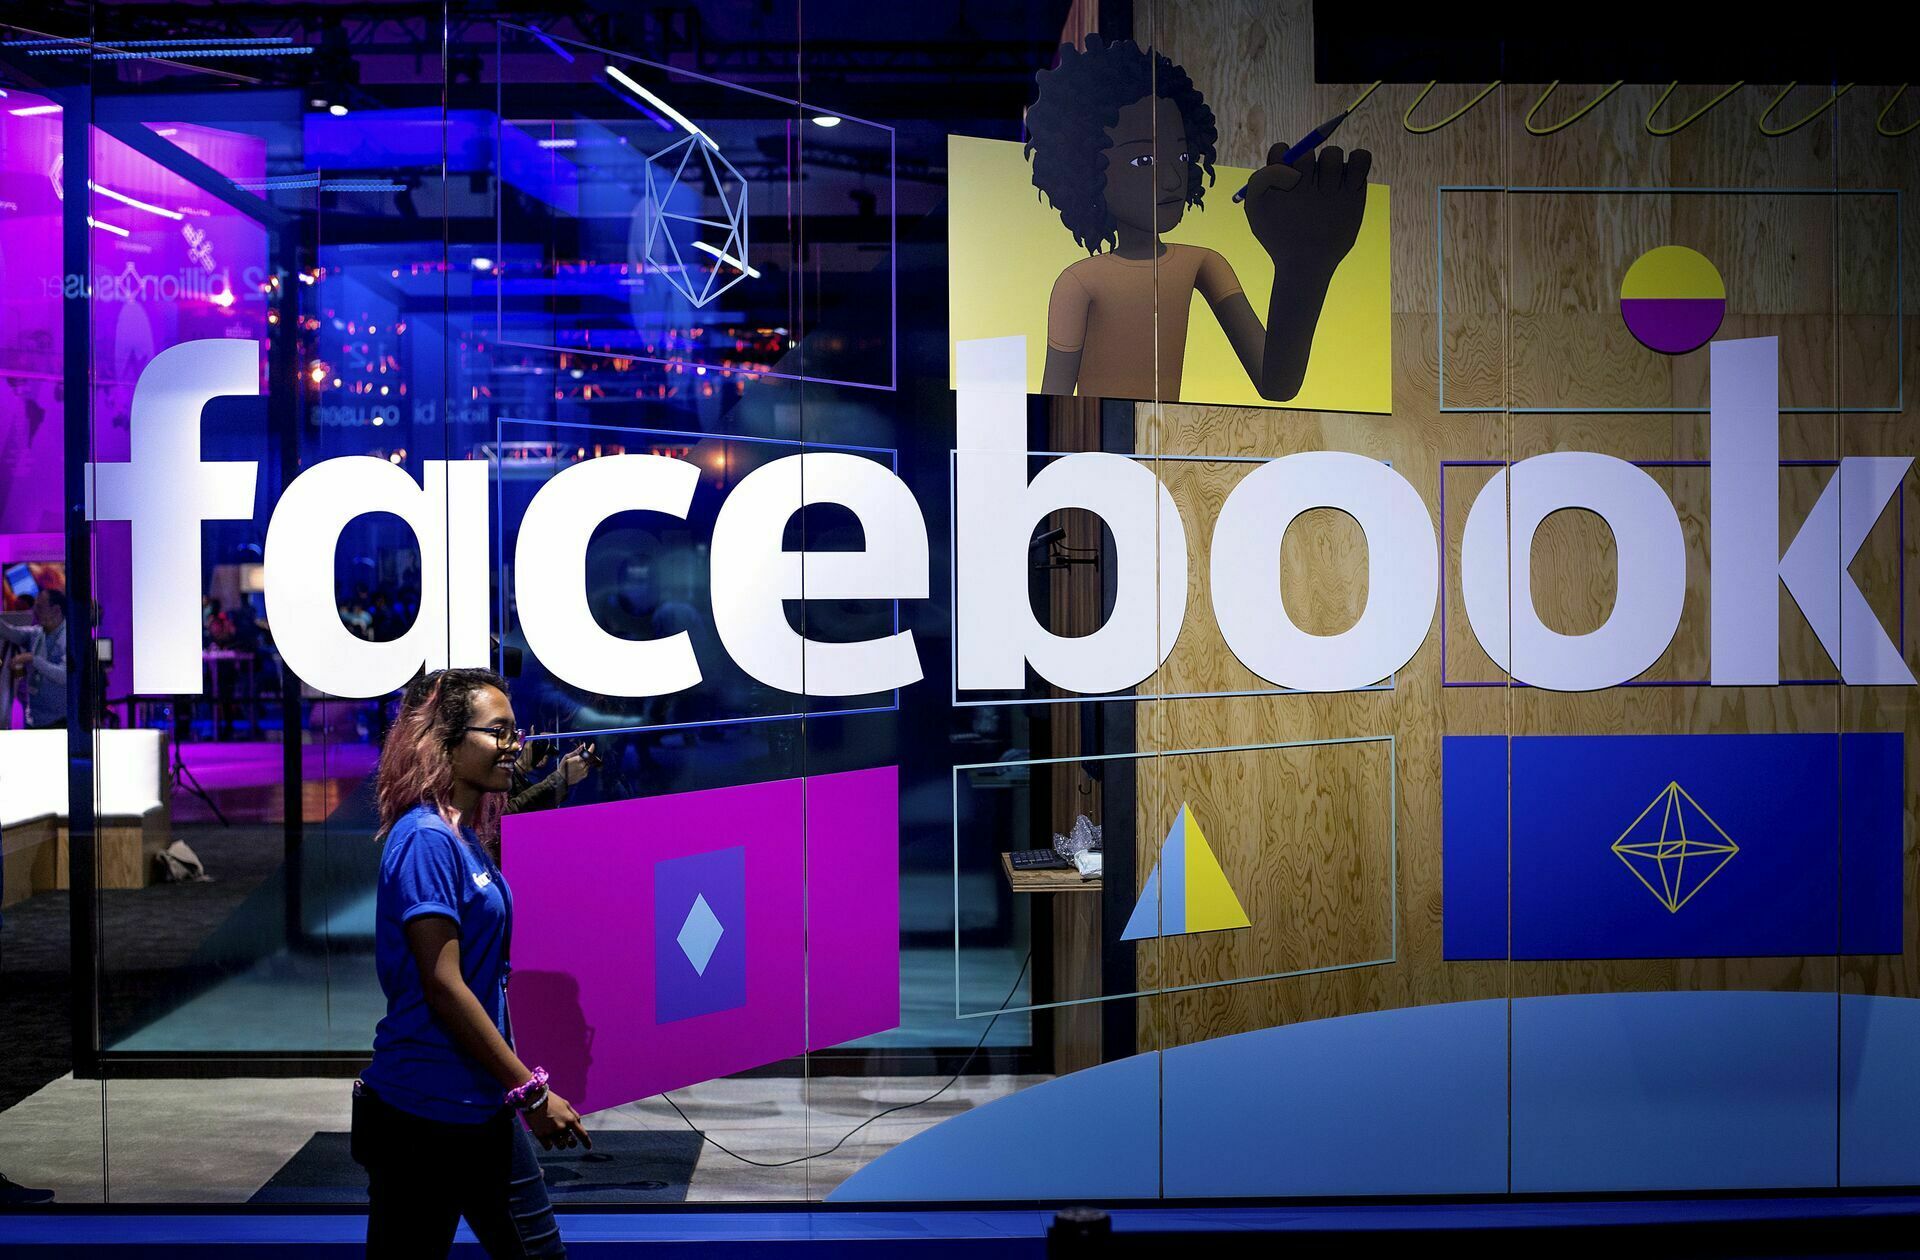 Эксперты: Facebook не прошла проверку на соблюдение гражданских прав